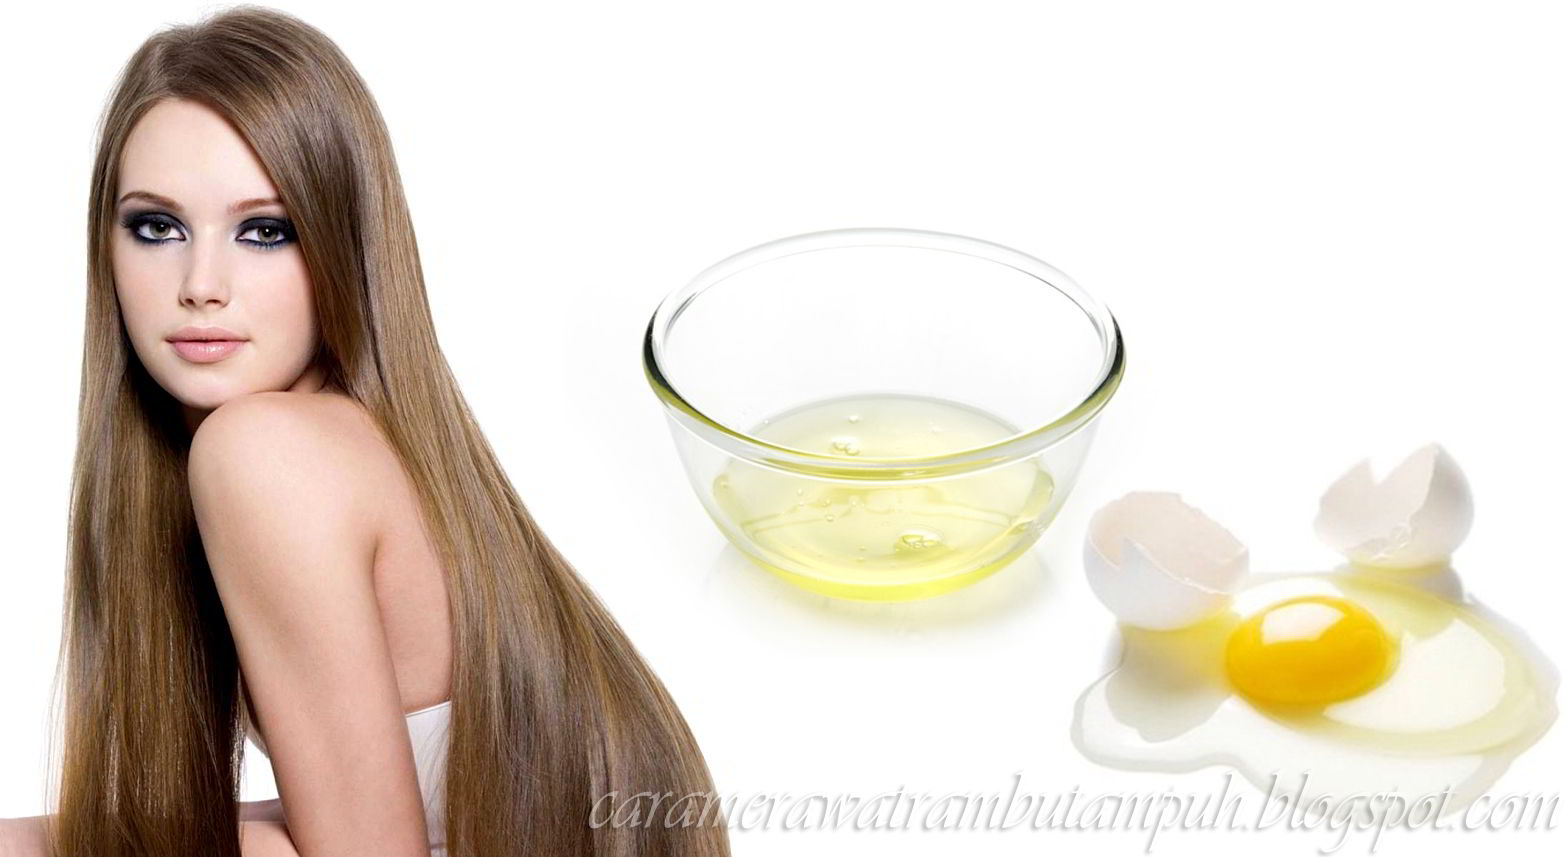 Sederhana Banget Cara Merawat Rambut Dengan Putih Telur Tips Cara